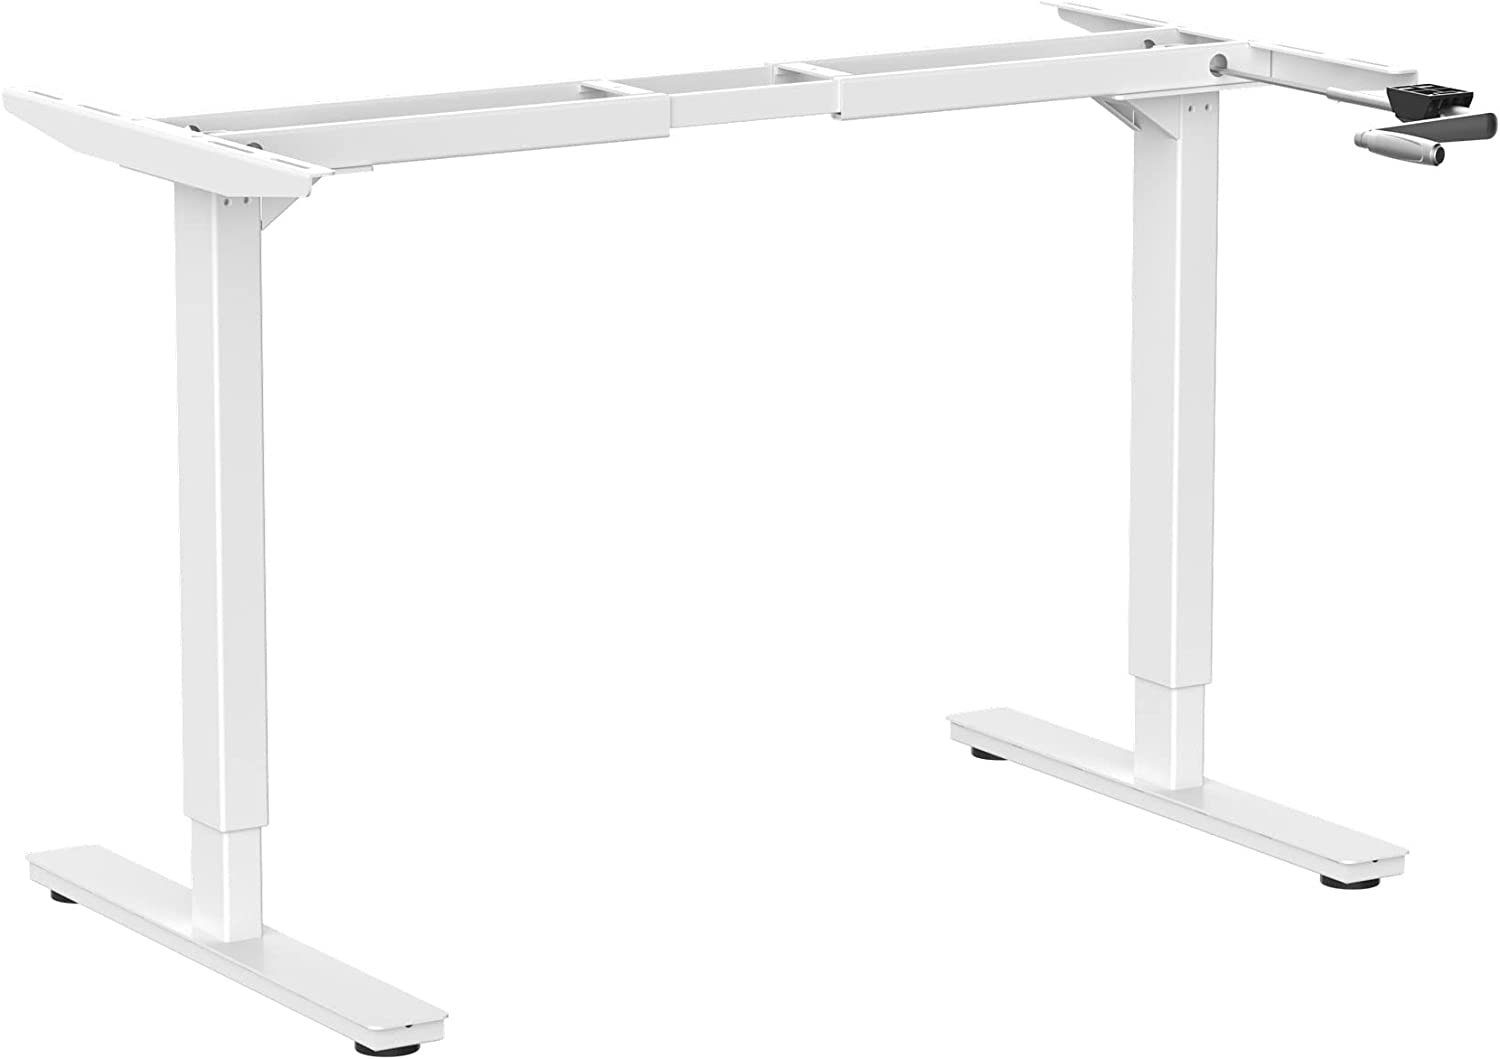 Ergotopia Schreibtisch Desktopia Budget Höhenverstellbarer Schreibtisch, Per Kurbel verstellbares Tischgestell, Breite verstellbar für alle gängigen Tischplatten, Höhenverstellbarkeit durch Kurbel Weiß